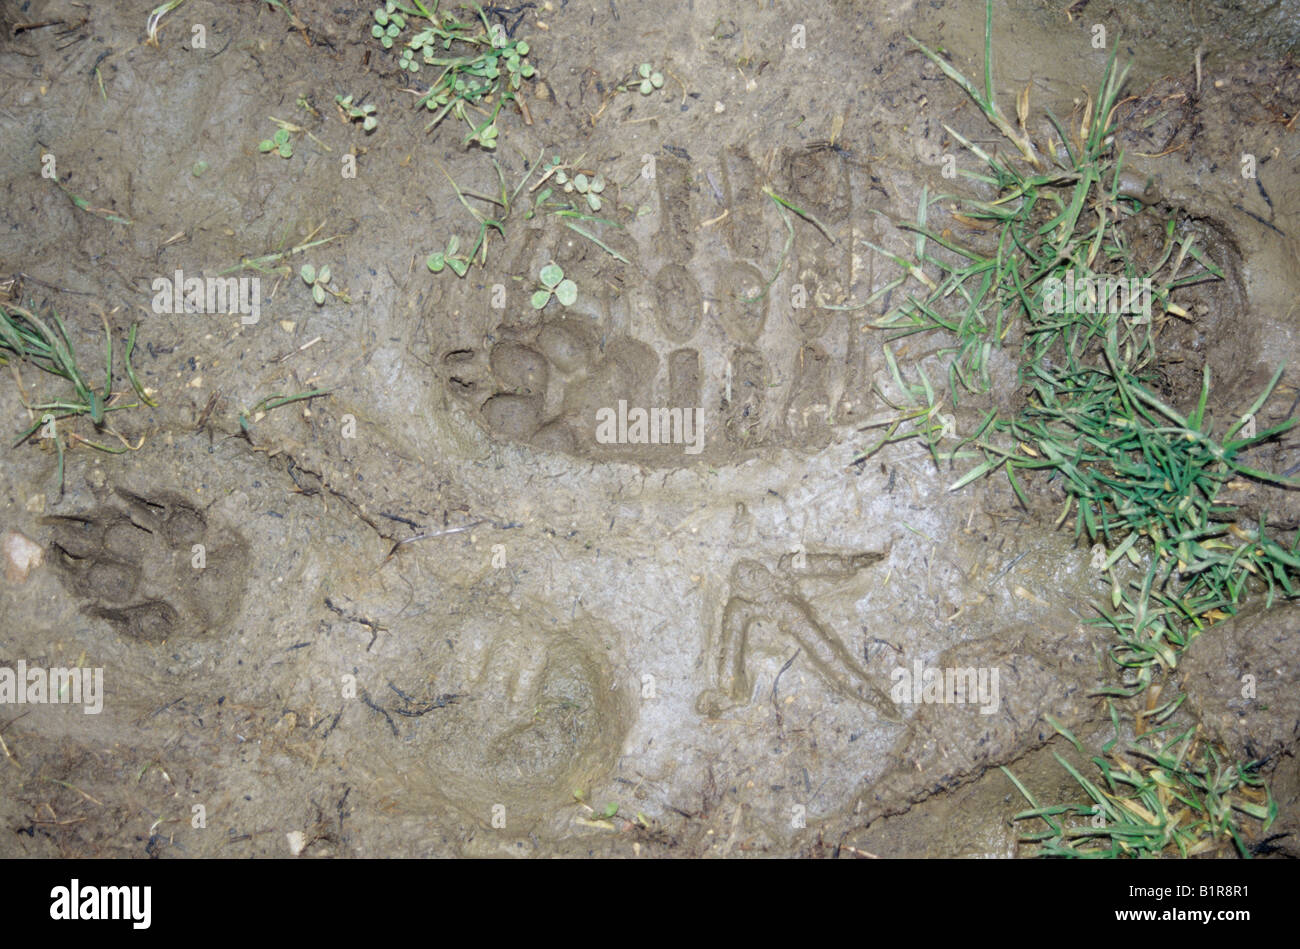 Des empreintes de pas et des pistes d'animaux dans la boue. Banque D'Images